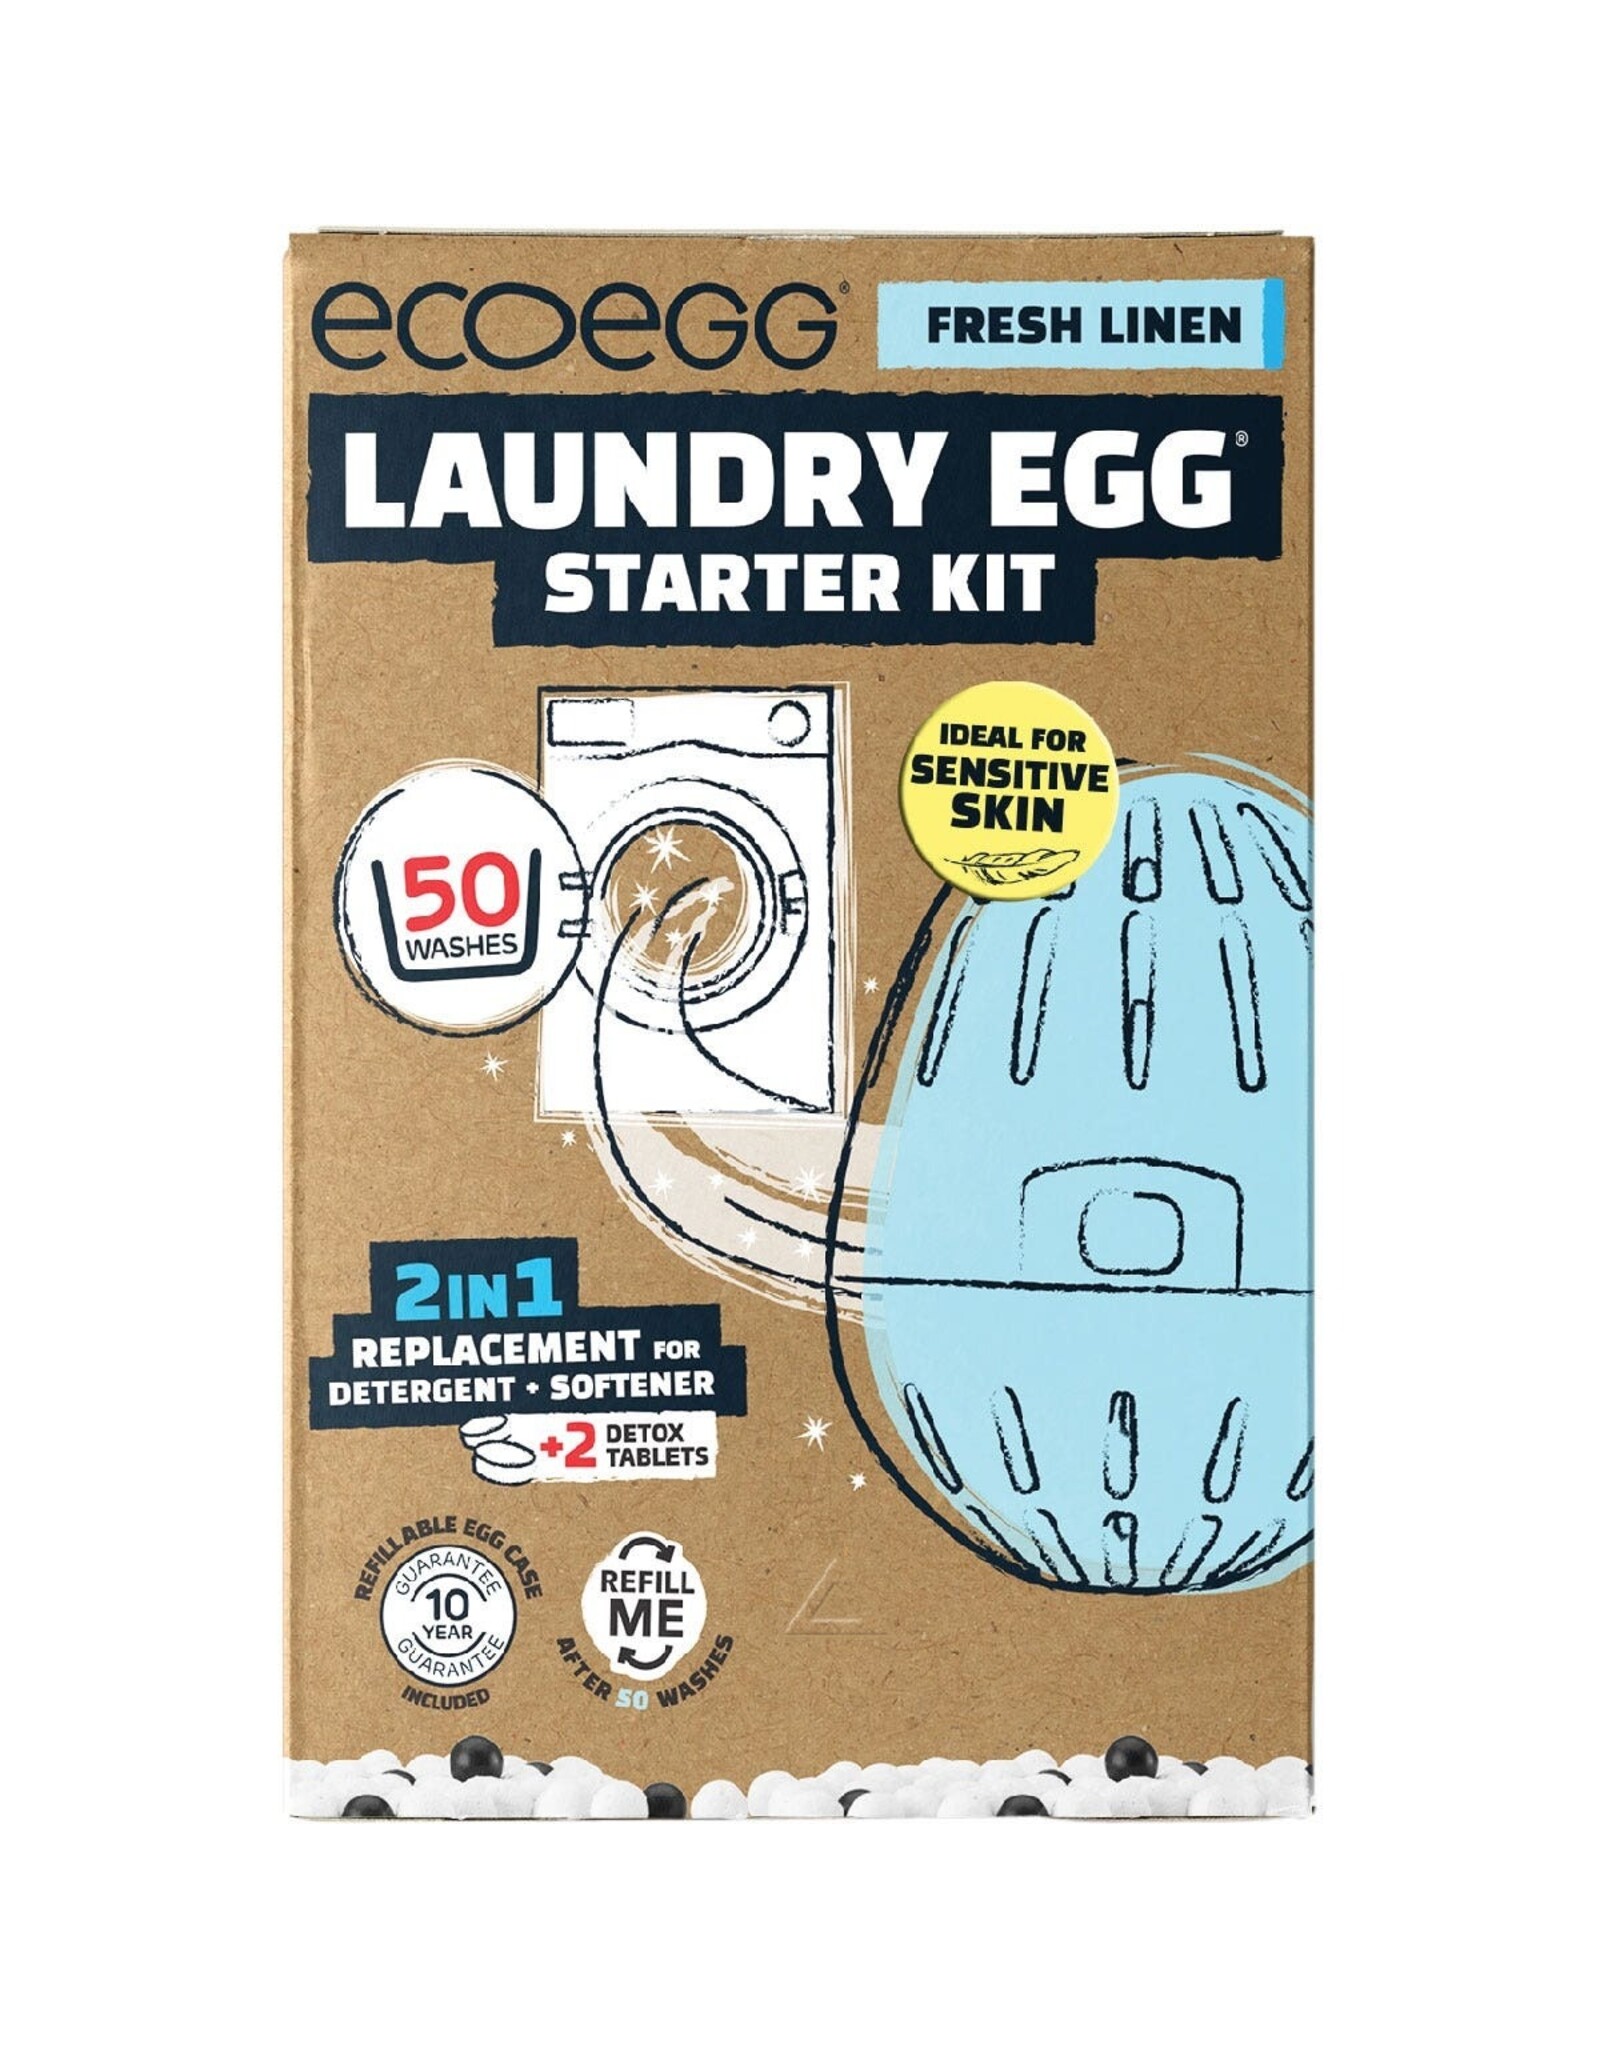 Ecoegg Laundry Egg Starter Kit 50 Washes Fresh Linen